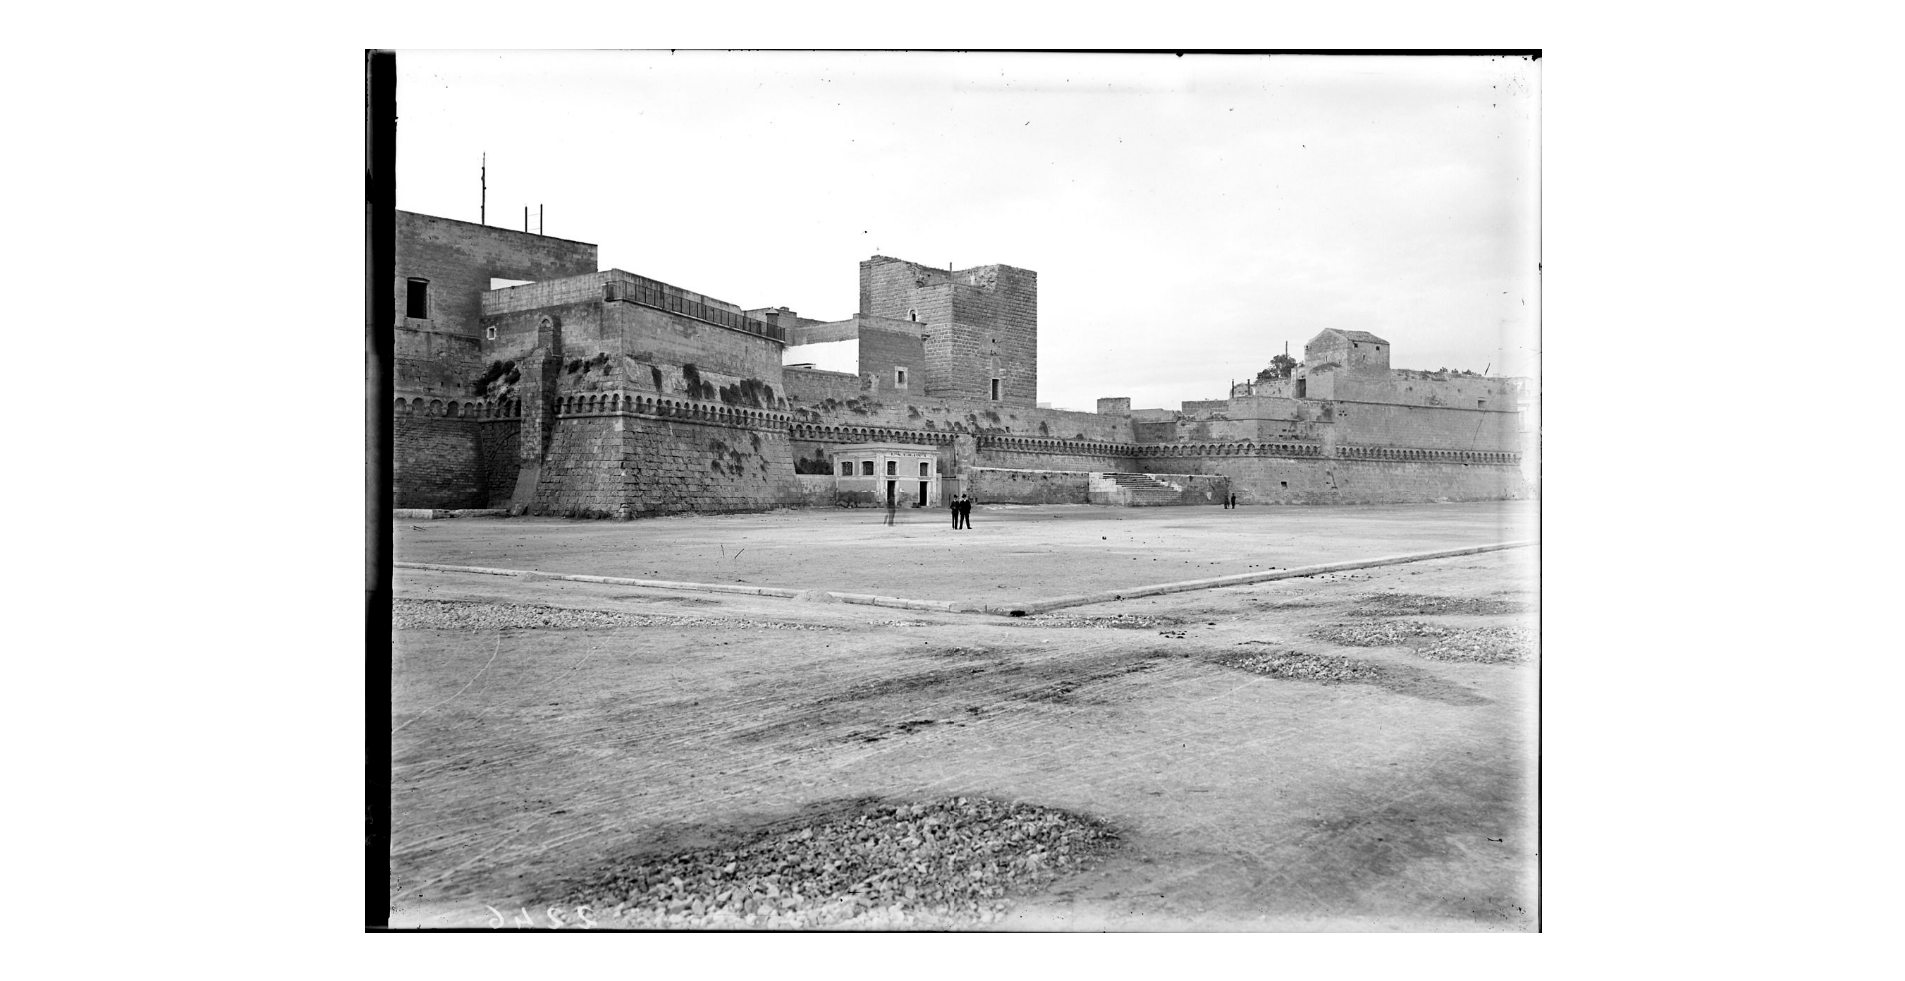 Fotografo non identificato, Bari - Castello, particolare, 1908, gelatina ai sali d'argento/vetro, E002246